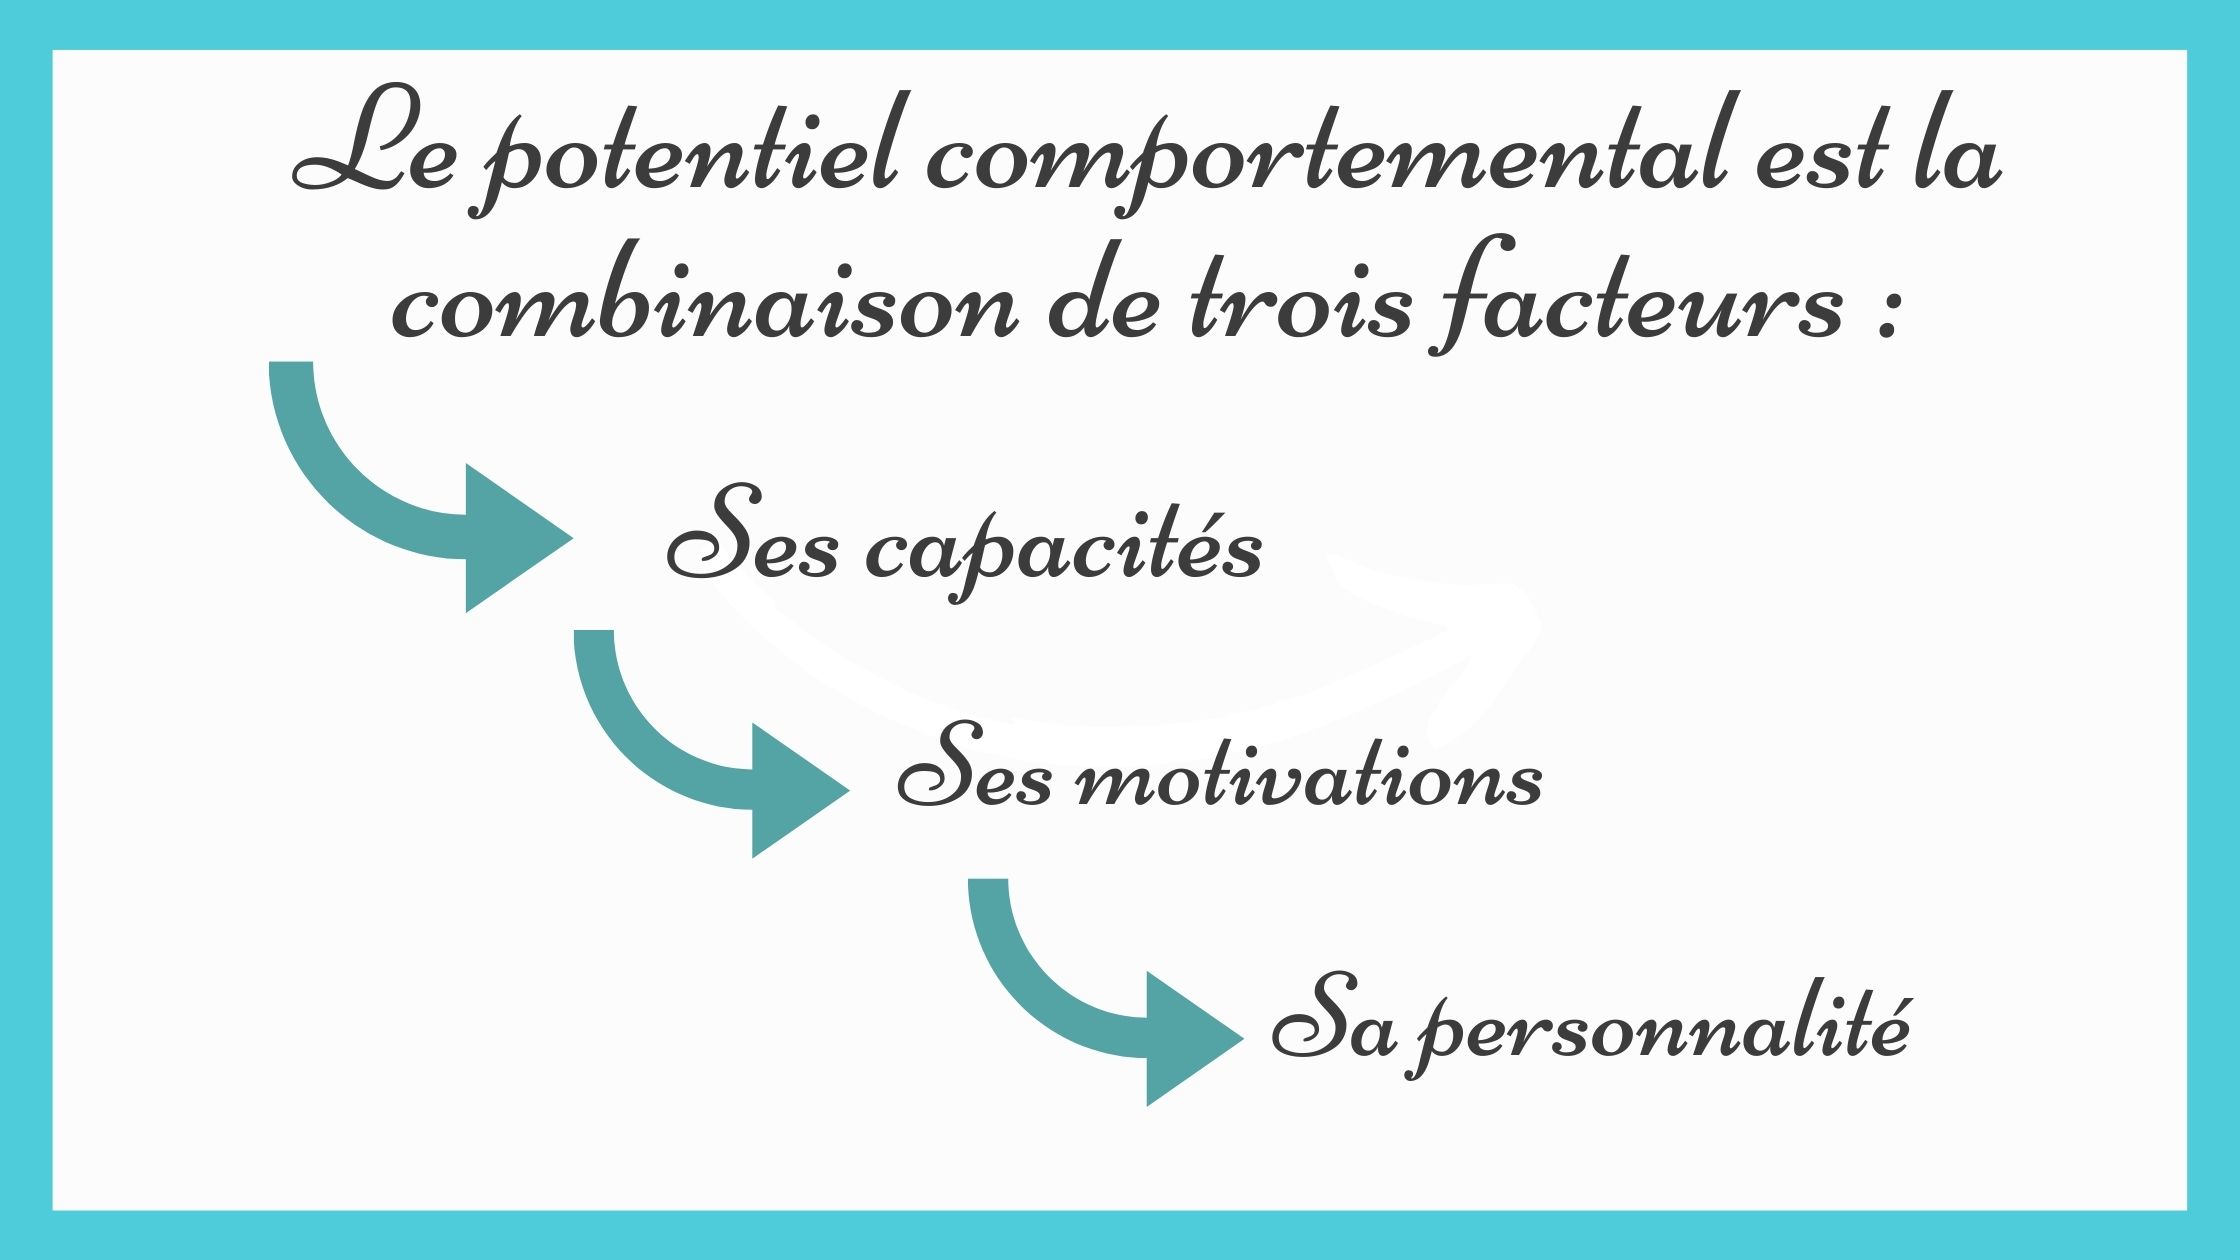 Le potentiel comportemental d’une personne est envisagé comme étant la combinaison de trois facteurs